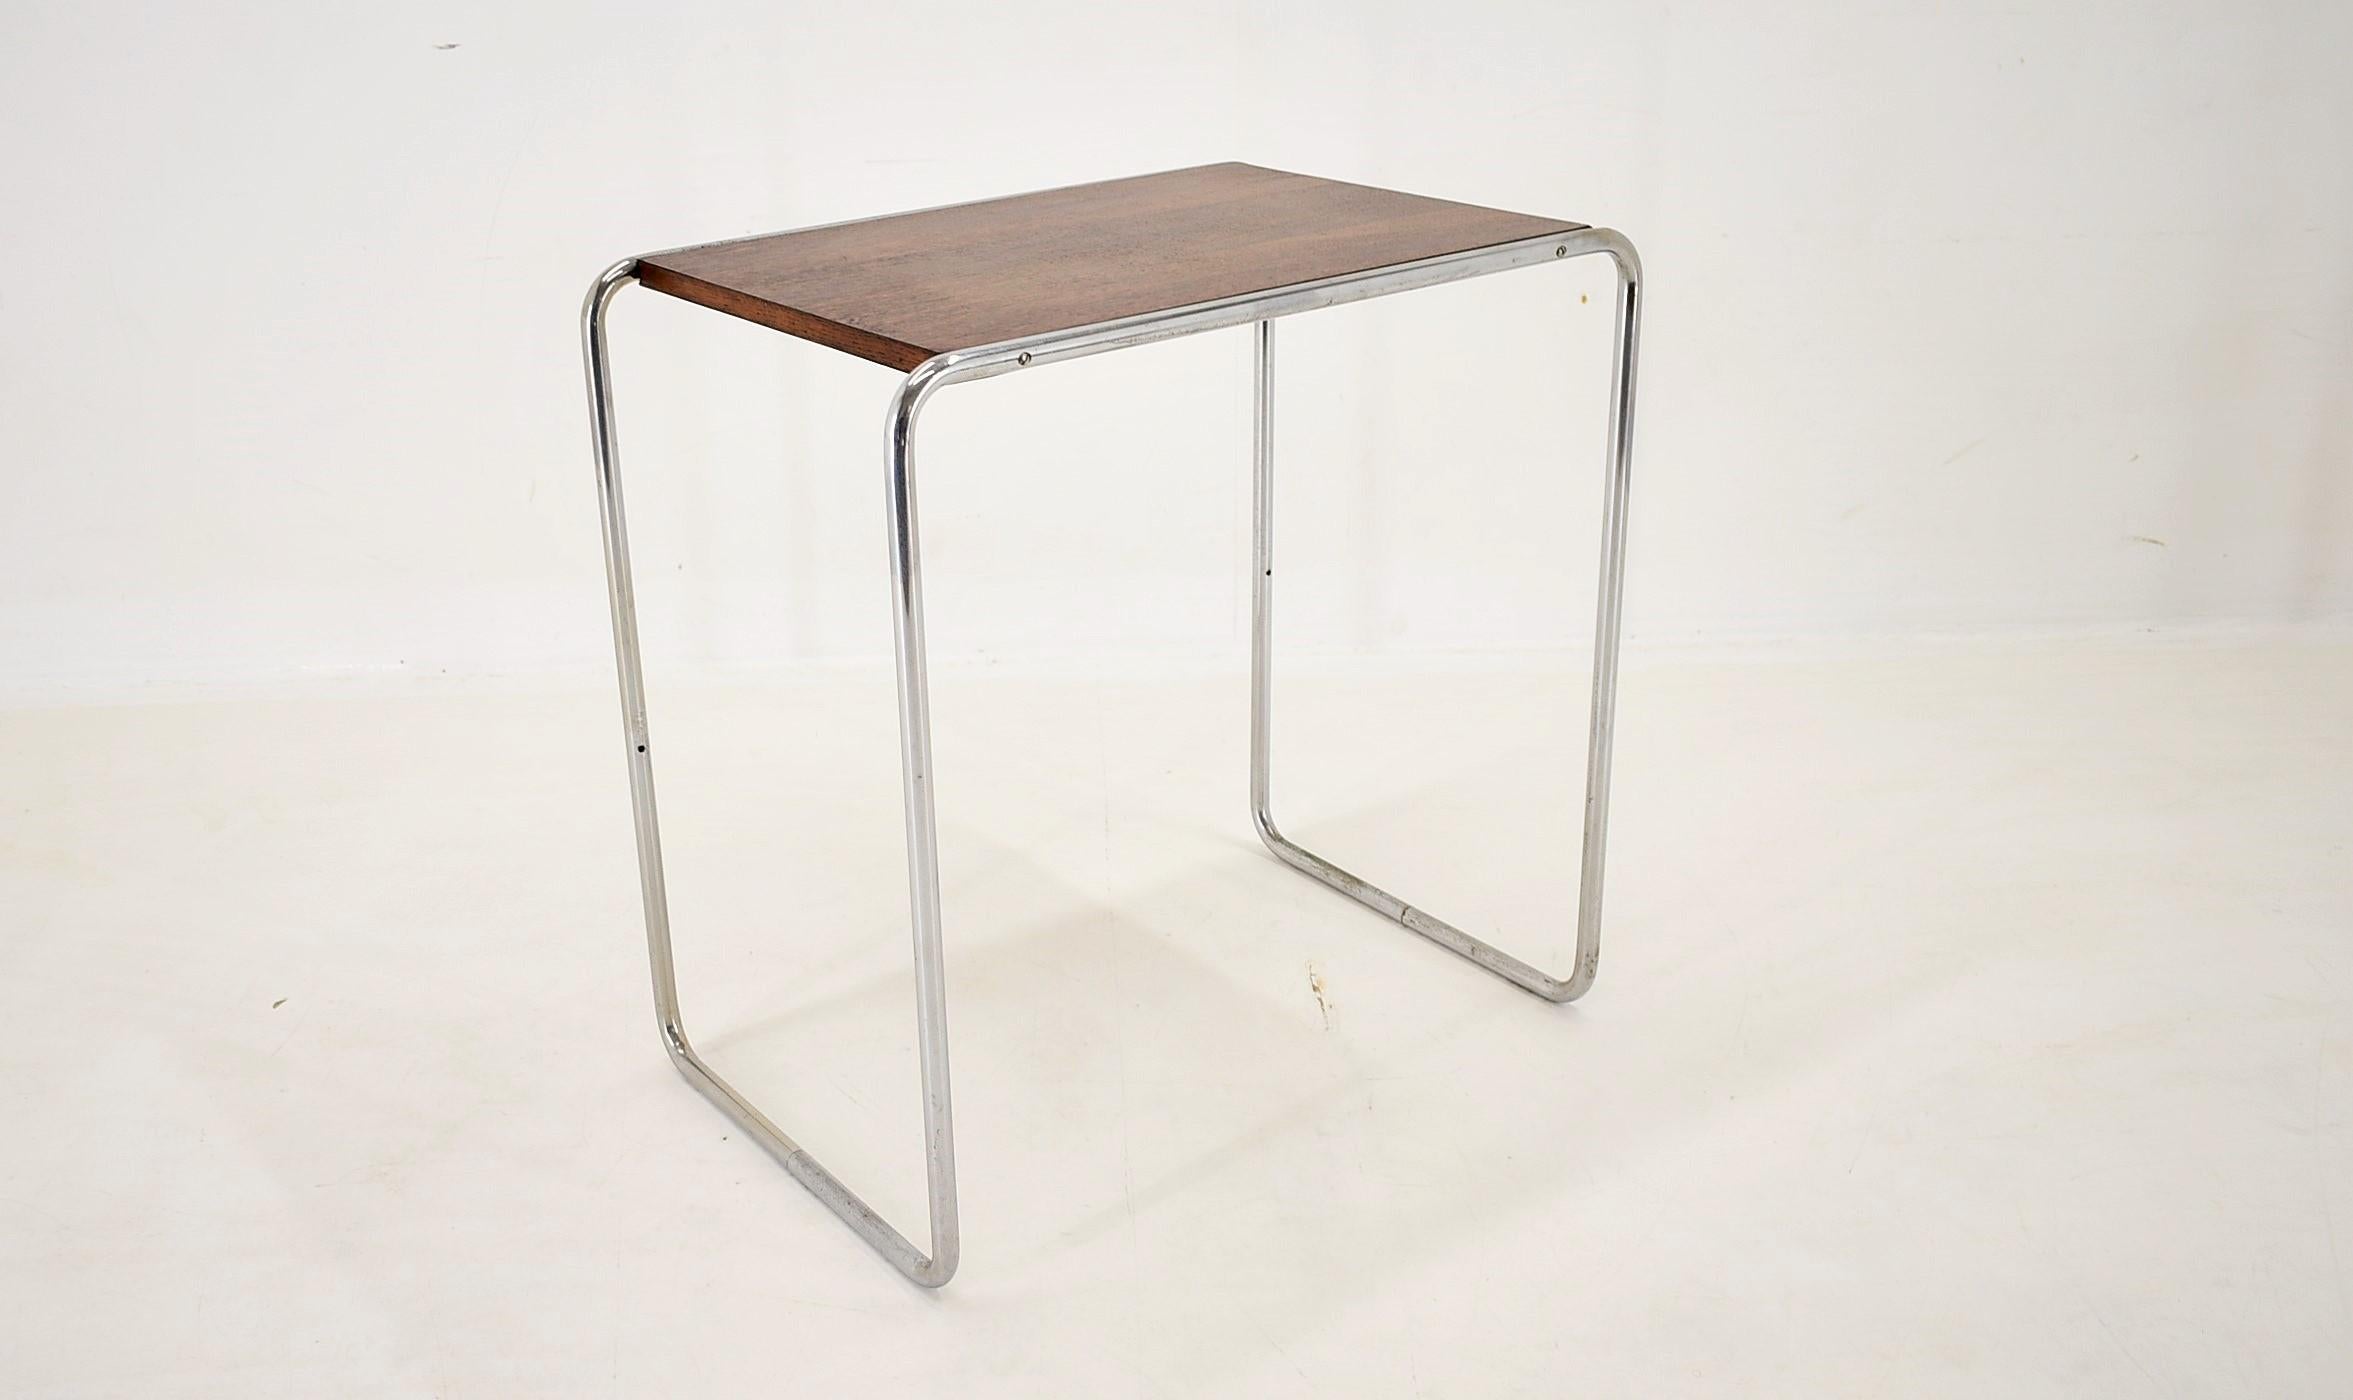 Bauhaus Chrome Table by Marcel Breuer for Mucke Melder, 1930s For Sale 11